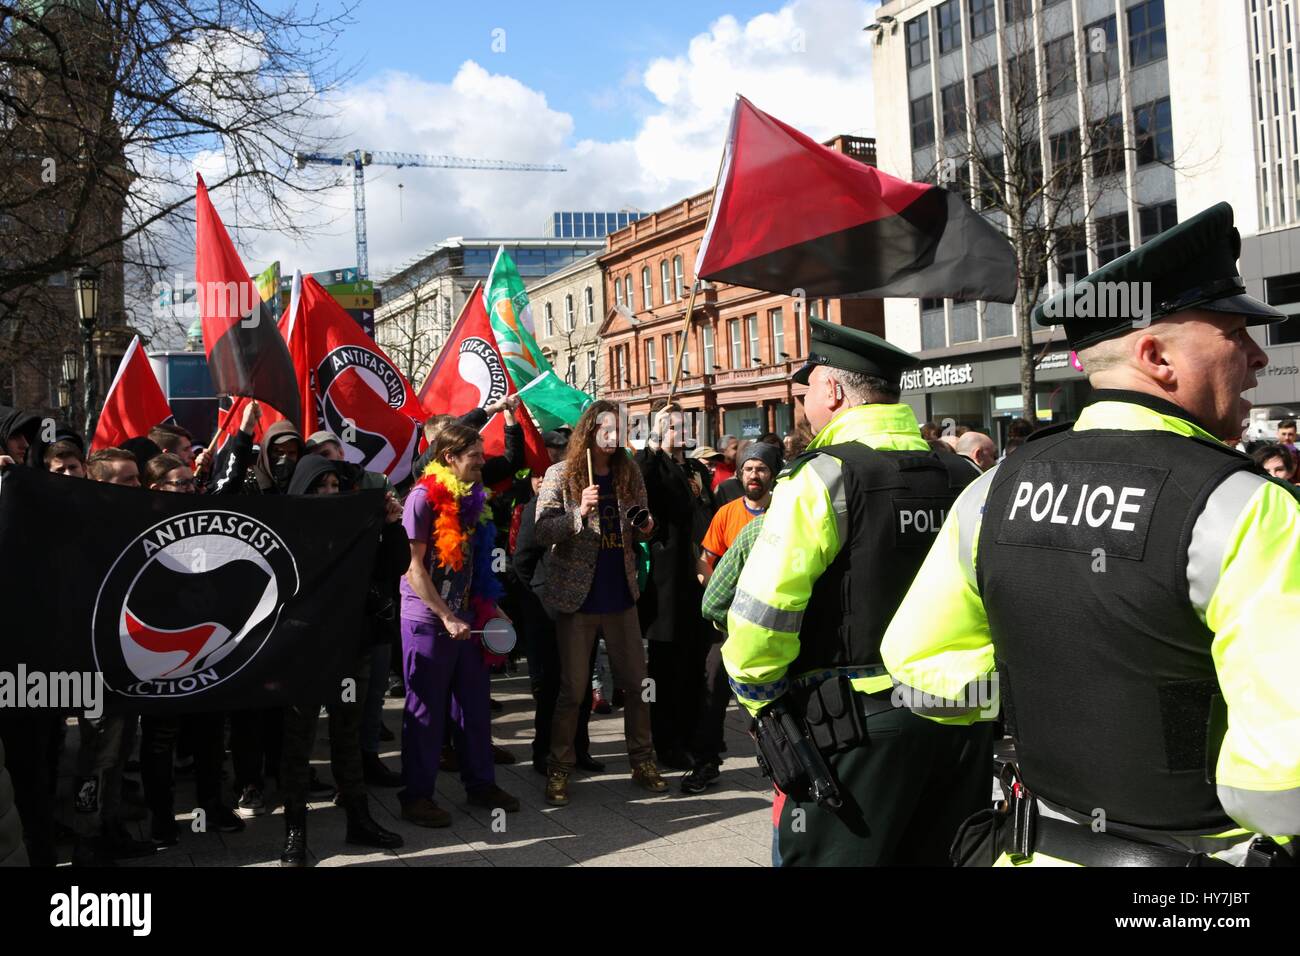 Belfast, Nordirland, Vereinigtes Königreich. 1. April 2017. Polizei überwacht eine Menge von anti-faschistischen Demonstranten außerhalb der Belfast City Hall Credit: Conall Kearney/Alamy Live News Stockfoto